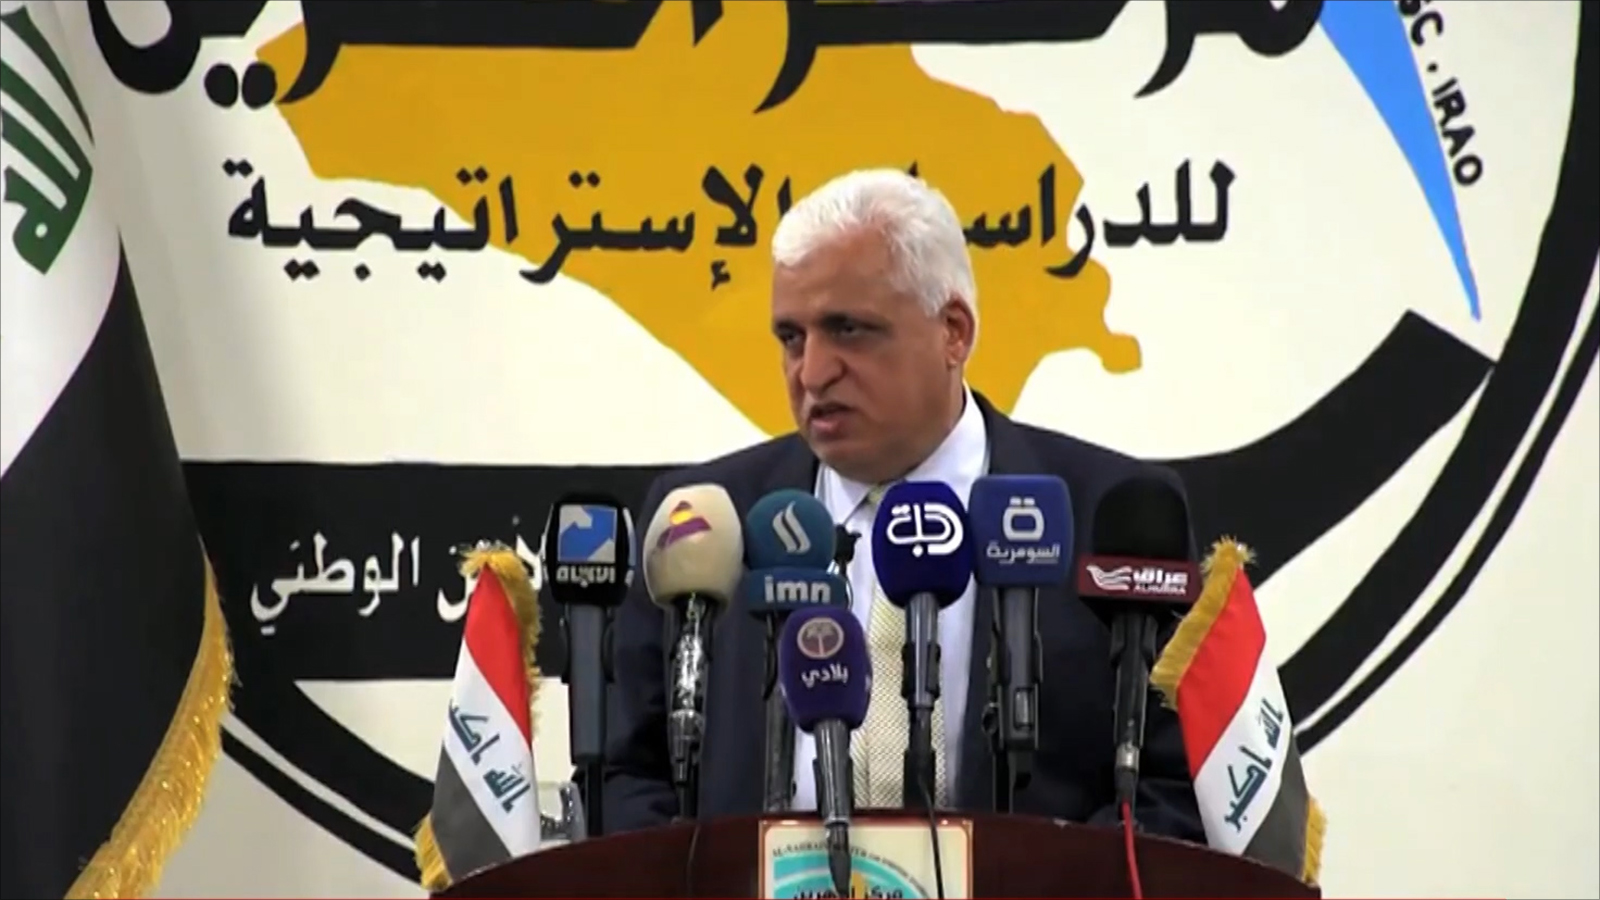  مصادر تحدثت عن احتمال ترشيح الفياض بديلا لرئاسة الحكومة المقبلة (الجزيرة)